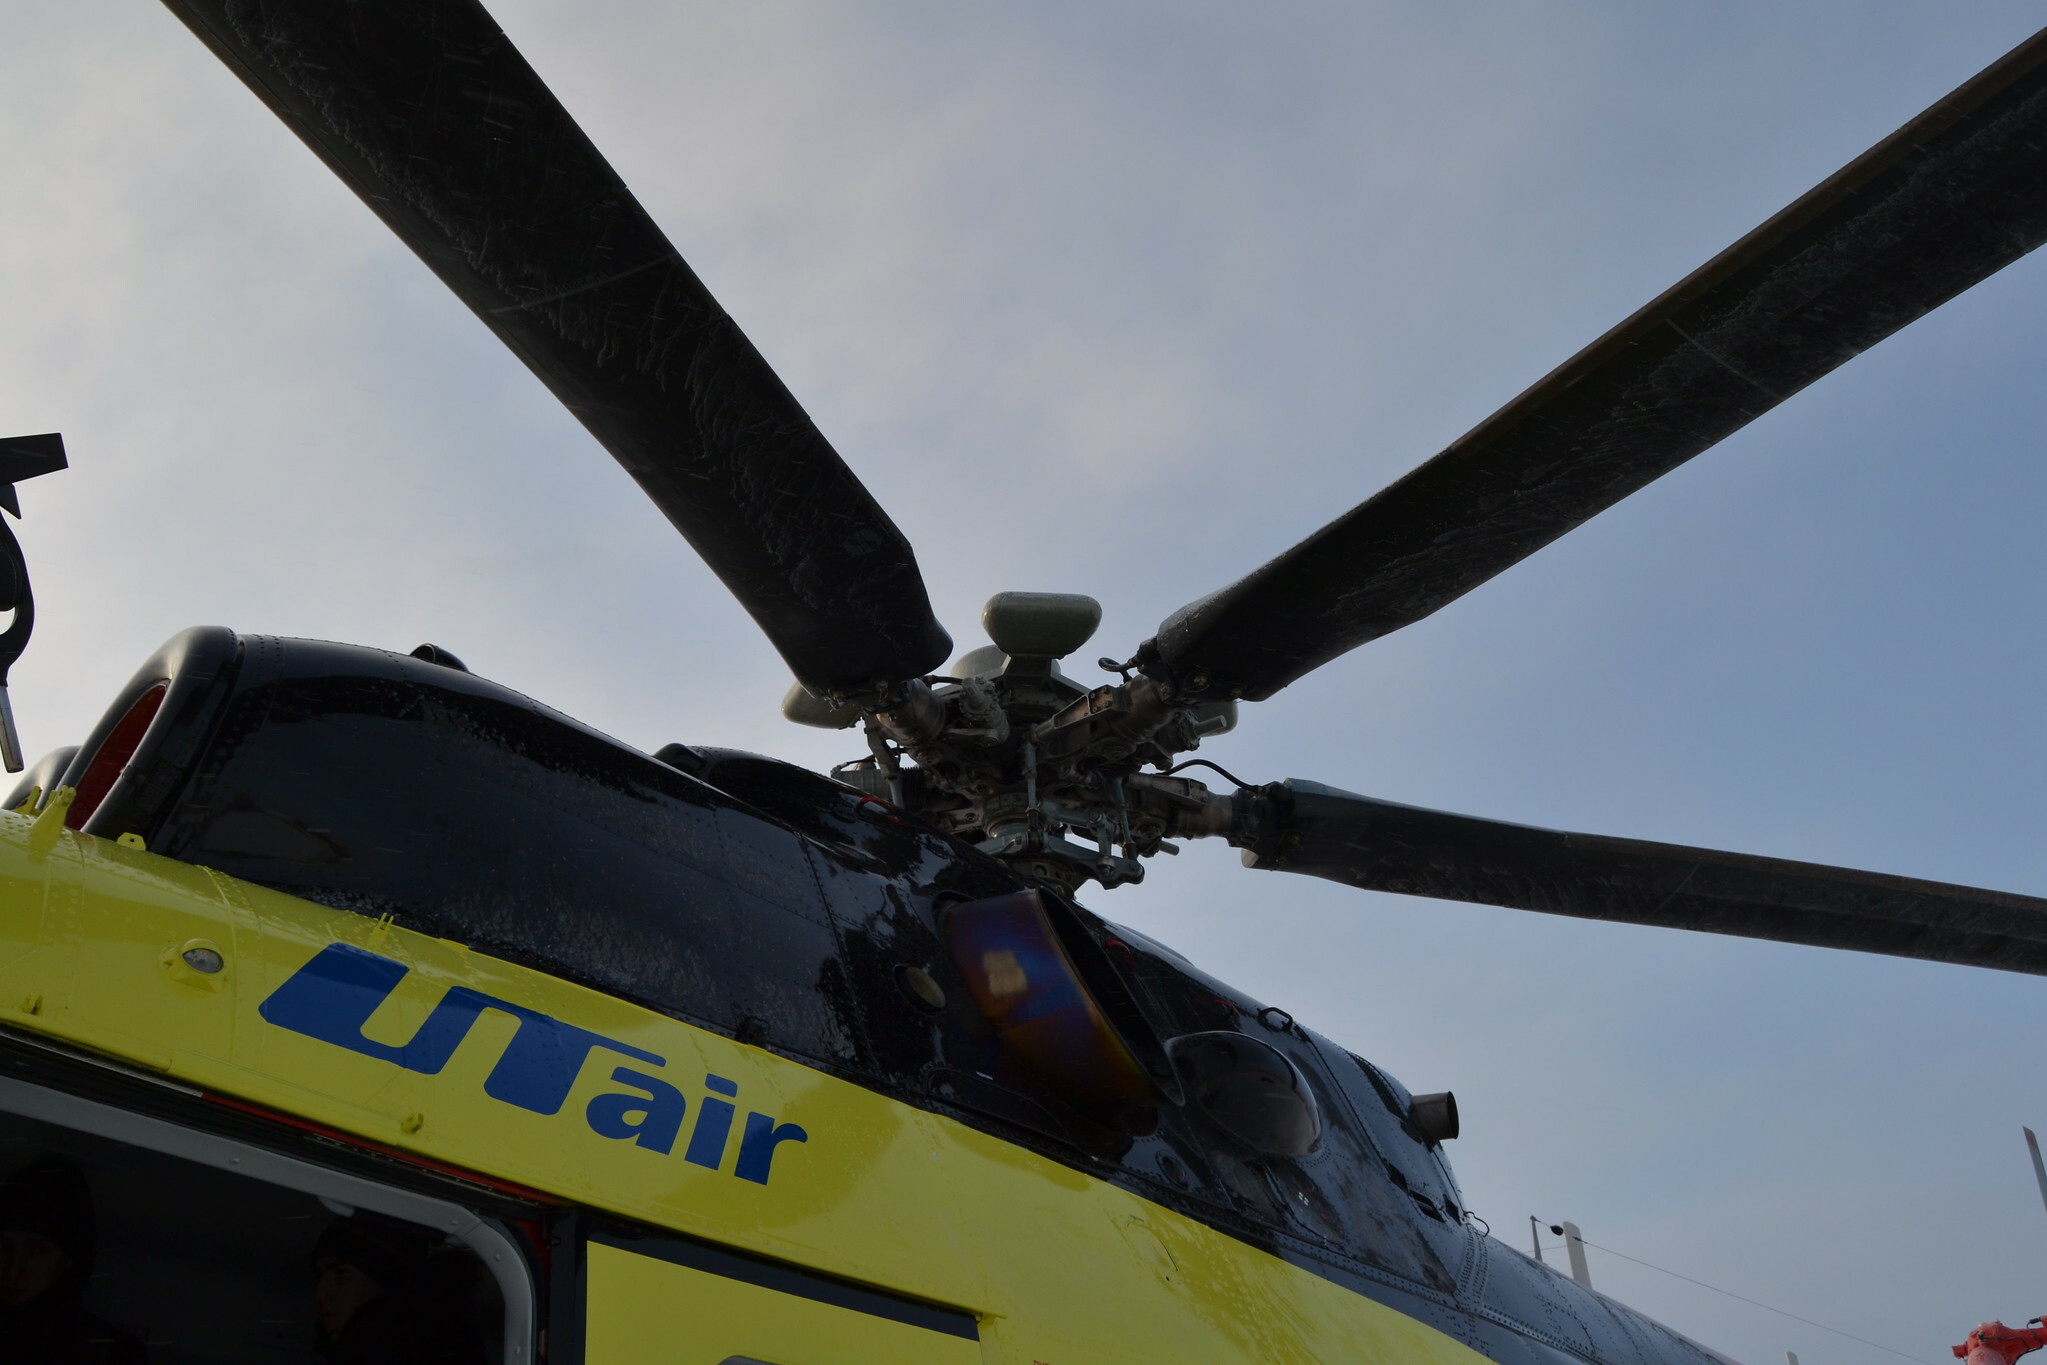 «Ютэйр — вертолетные услуги» подешевел за три месяца на 700 млн рублей